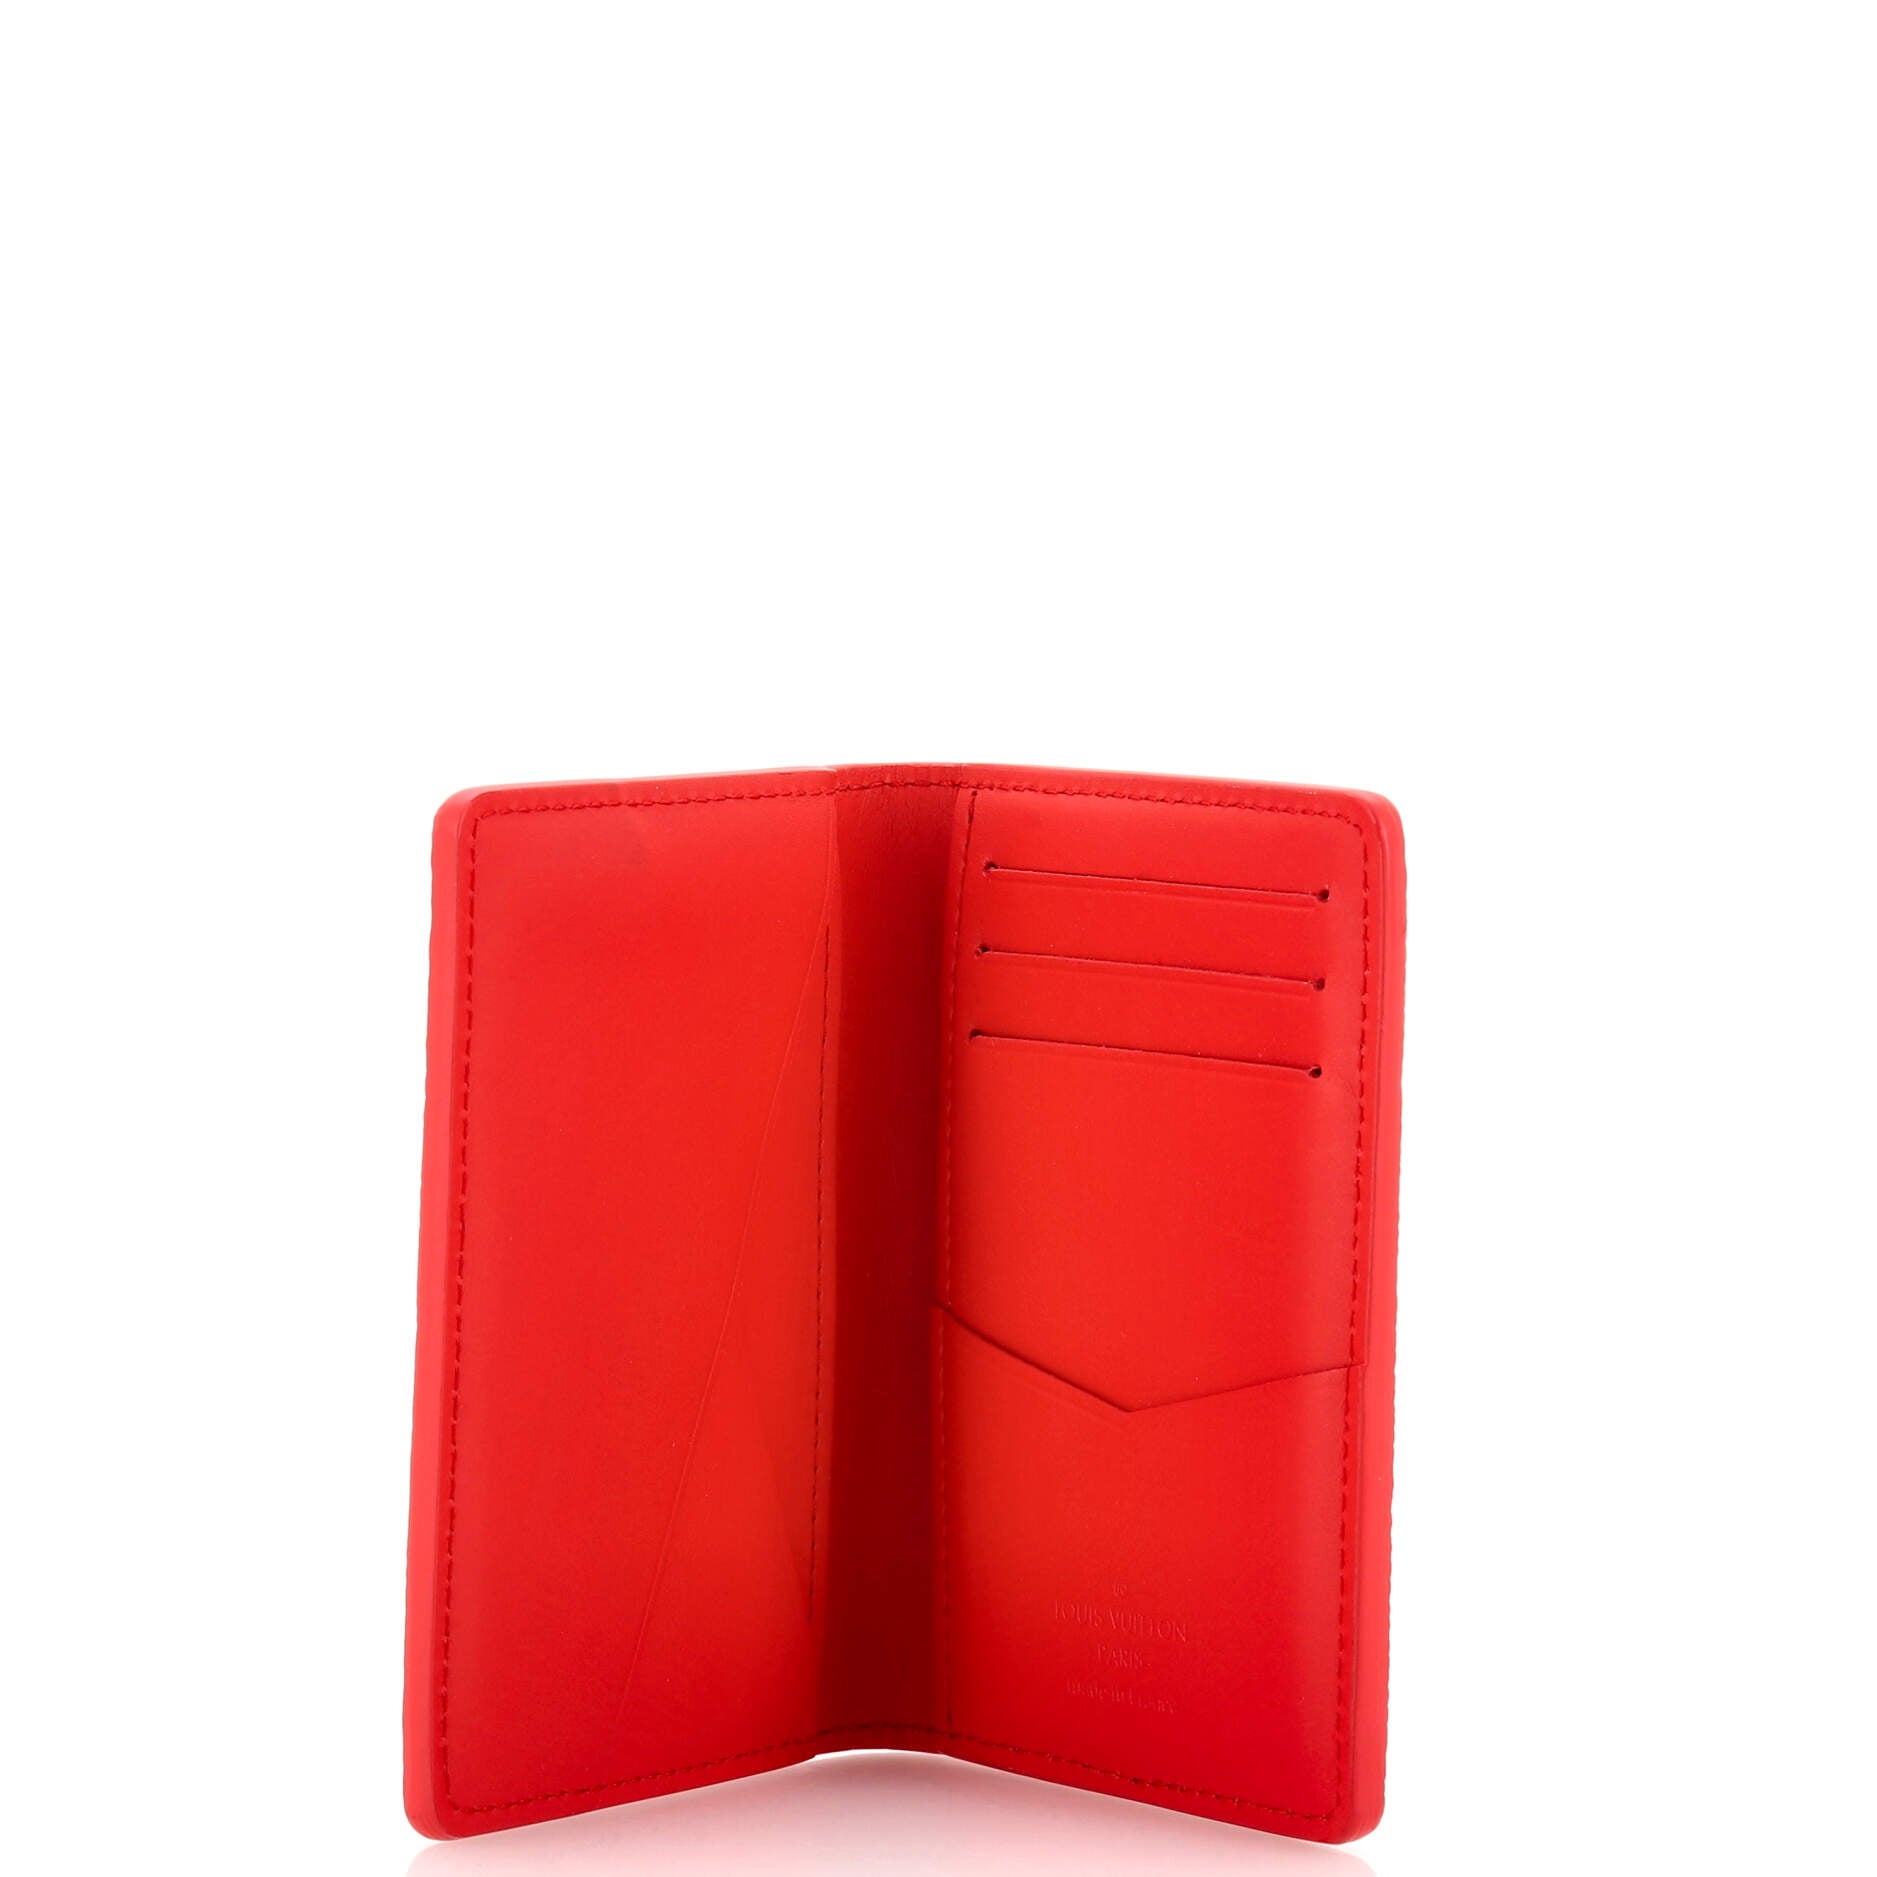 NWT Louis Vuitton Taigarama Monogram Pocket Organizer Wallet White